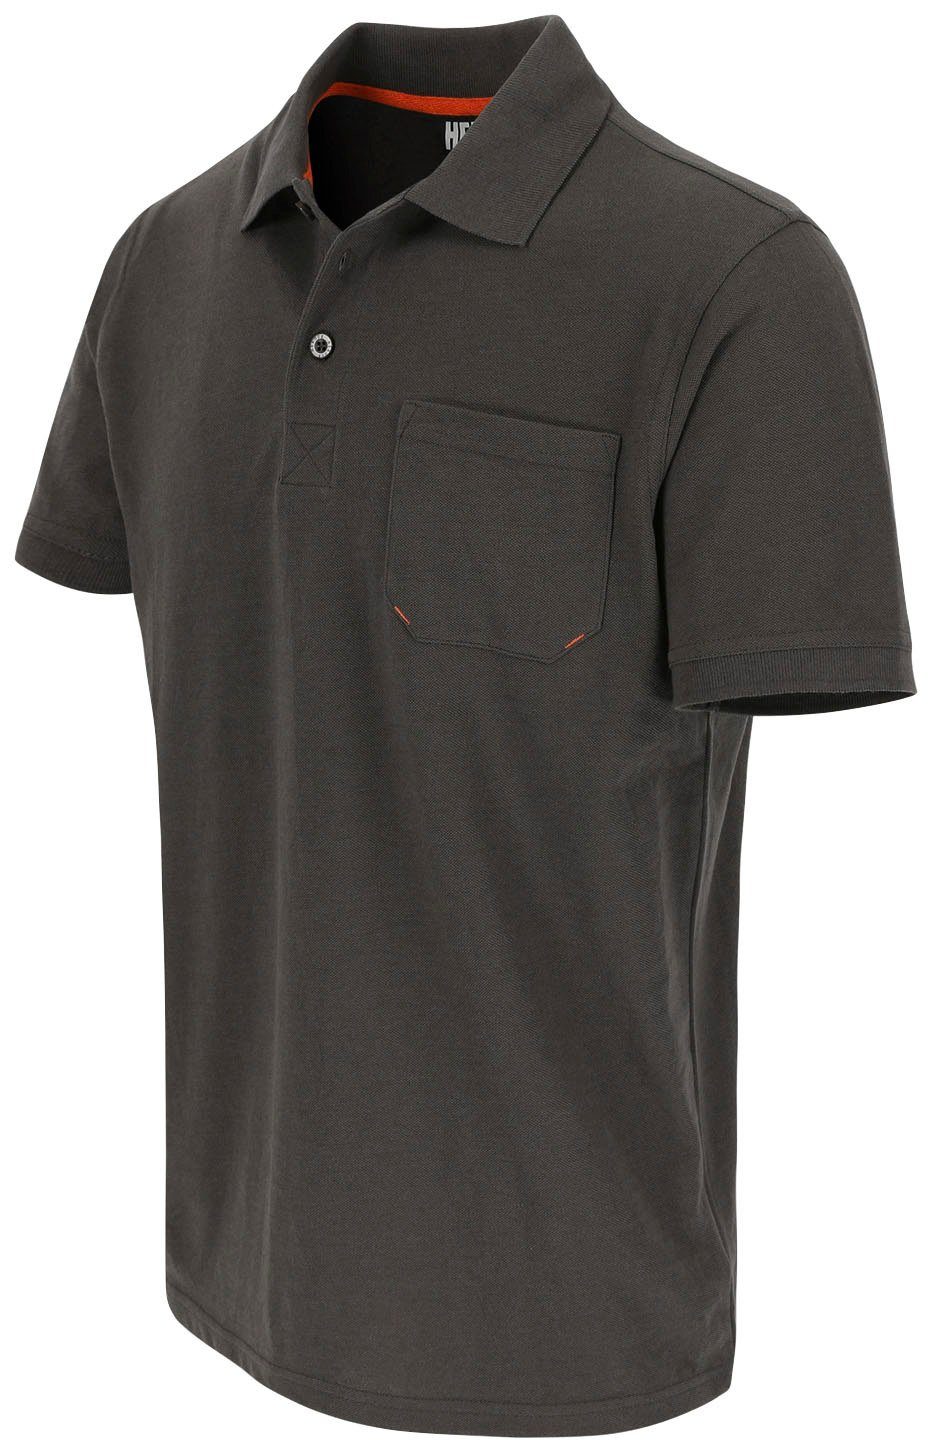 1 grau und Kurzärmlig Poloshirt Herock Farben Leo Bündchen, Rippstrick-Kragen verschiedene Polohemd Brusttasche,